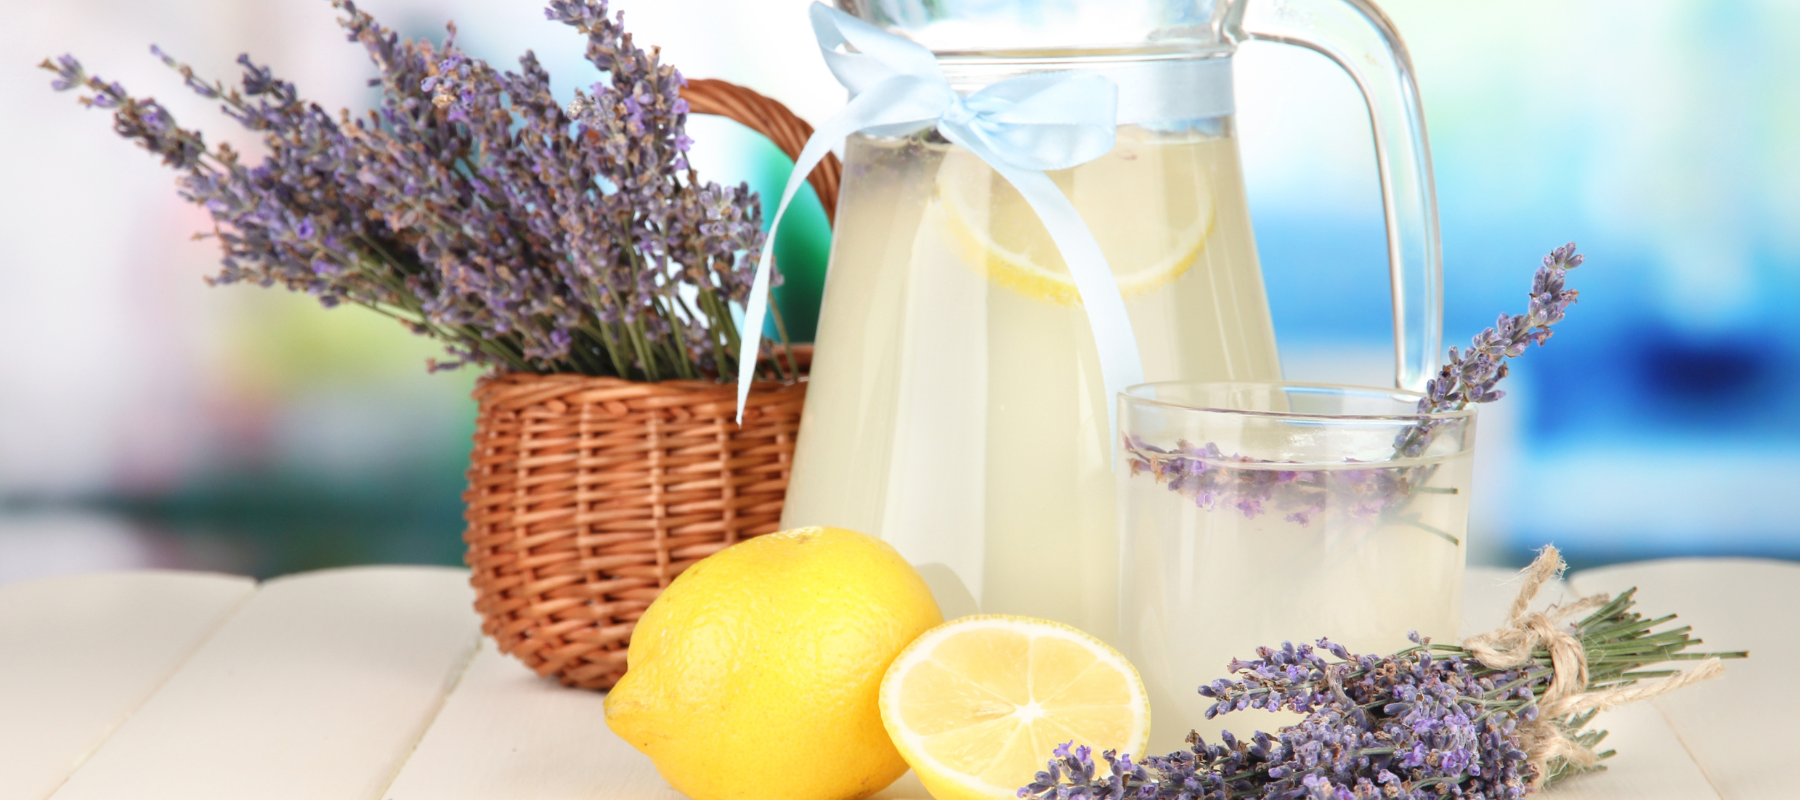 How to make Lavender Lemonade